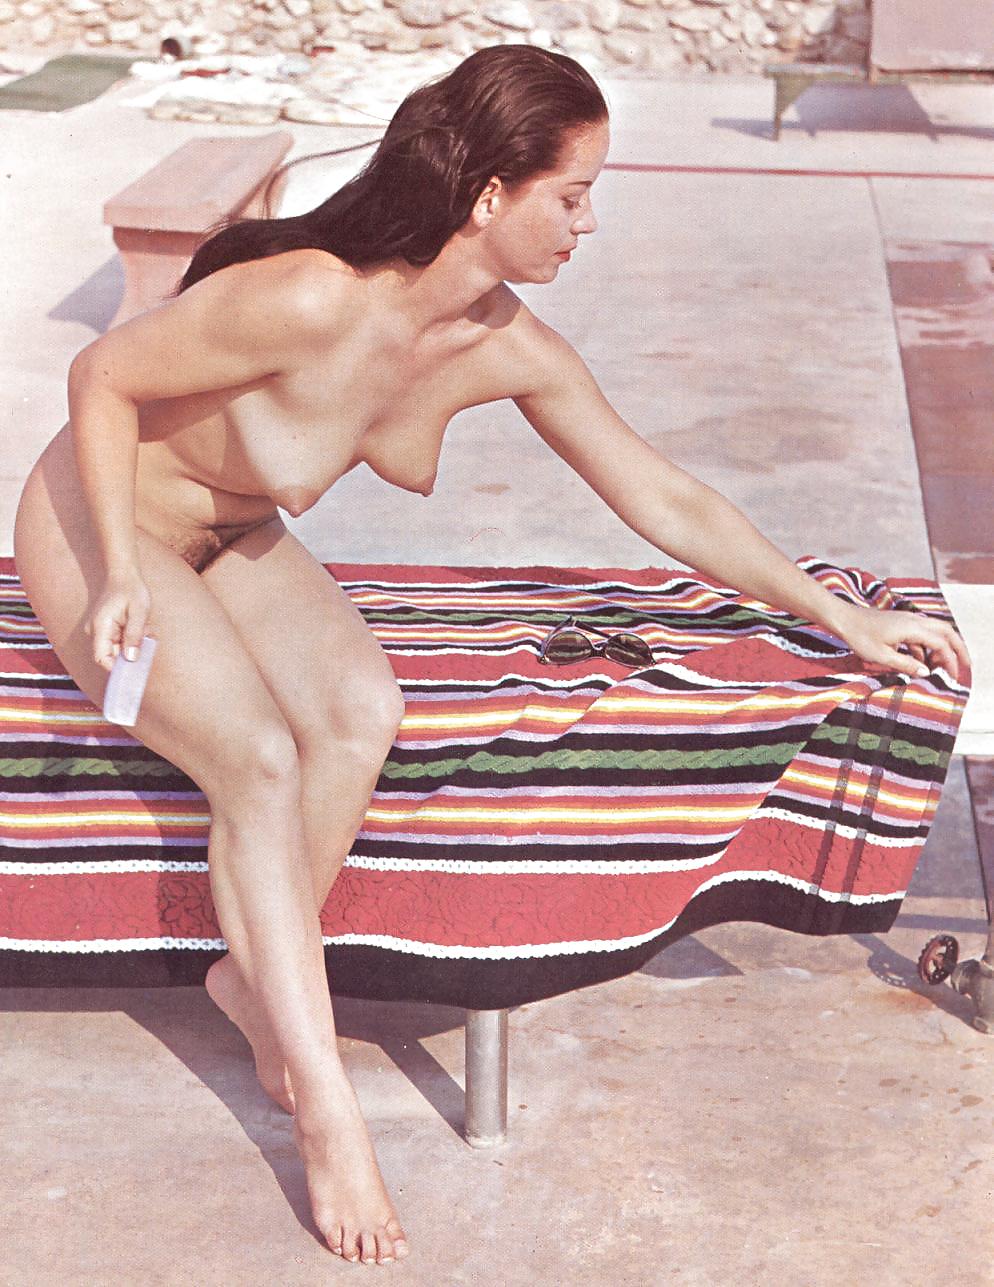 Nudo e senza vergogna - rivista nudista d'epoca
 #24241718